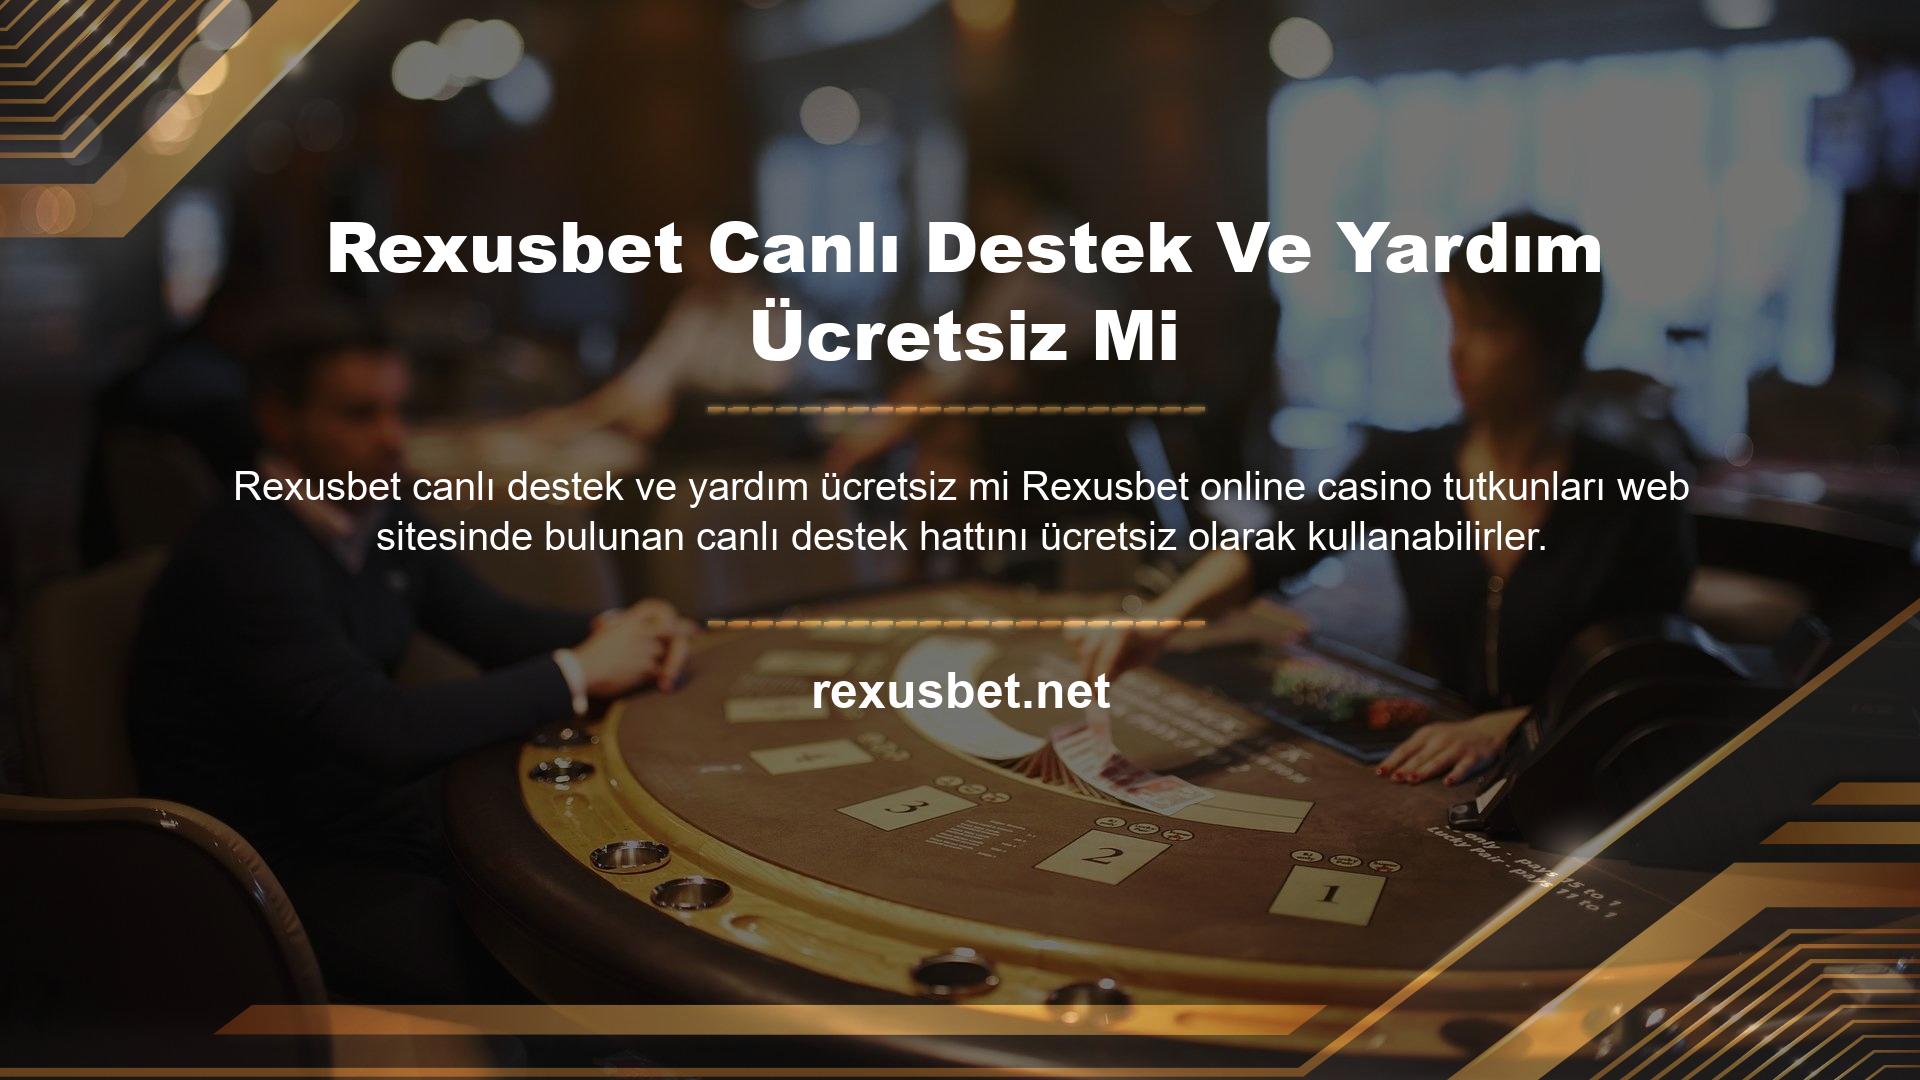 Rexusbet sitesi diğerlerinden farklı olduğu için casino meraklıları canlı yardım ve destek ekibiyle iletişime geçebilir